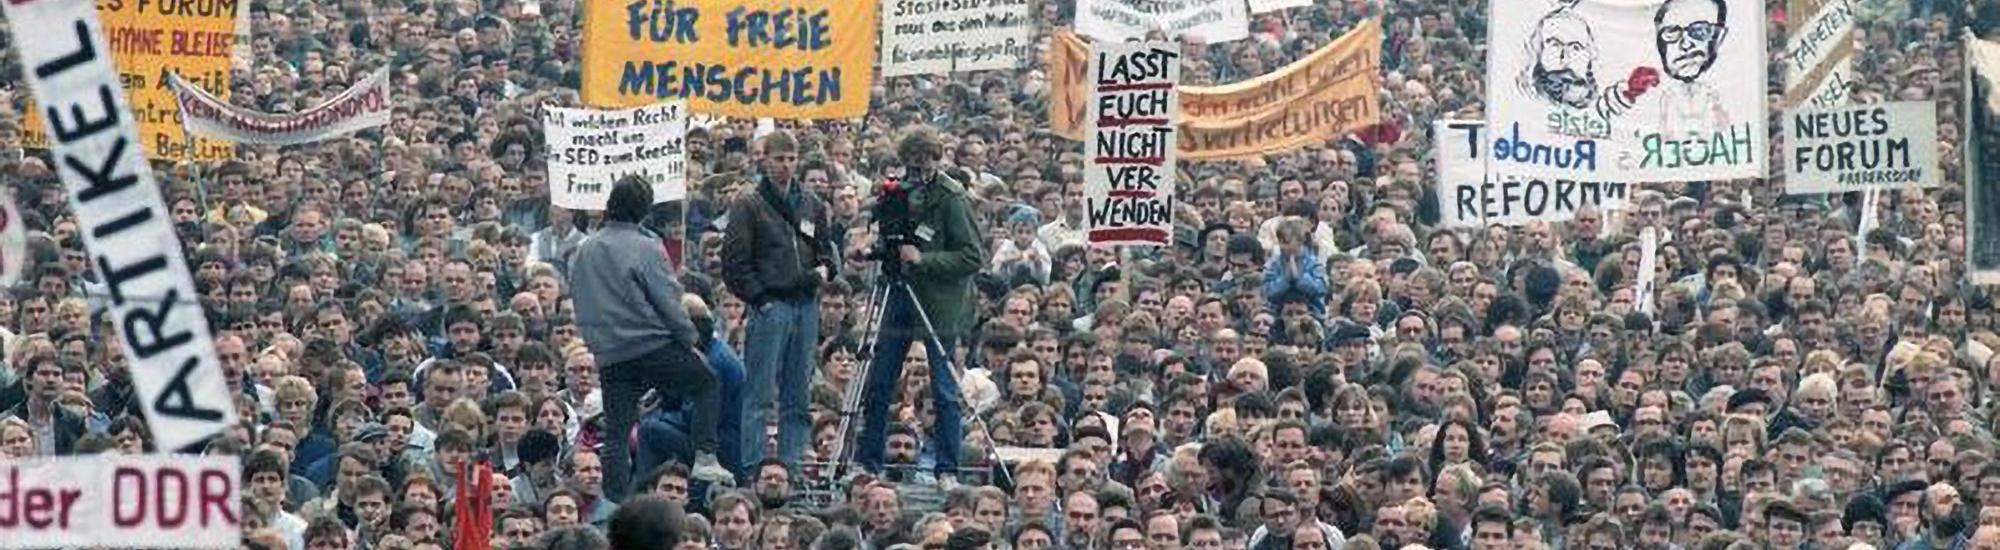 Eine große Menschenmenge demonstriert am 4. November 1989 auf dem Alexanderplatz in Berlin.